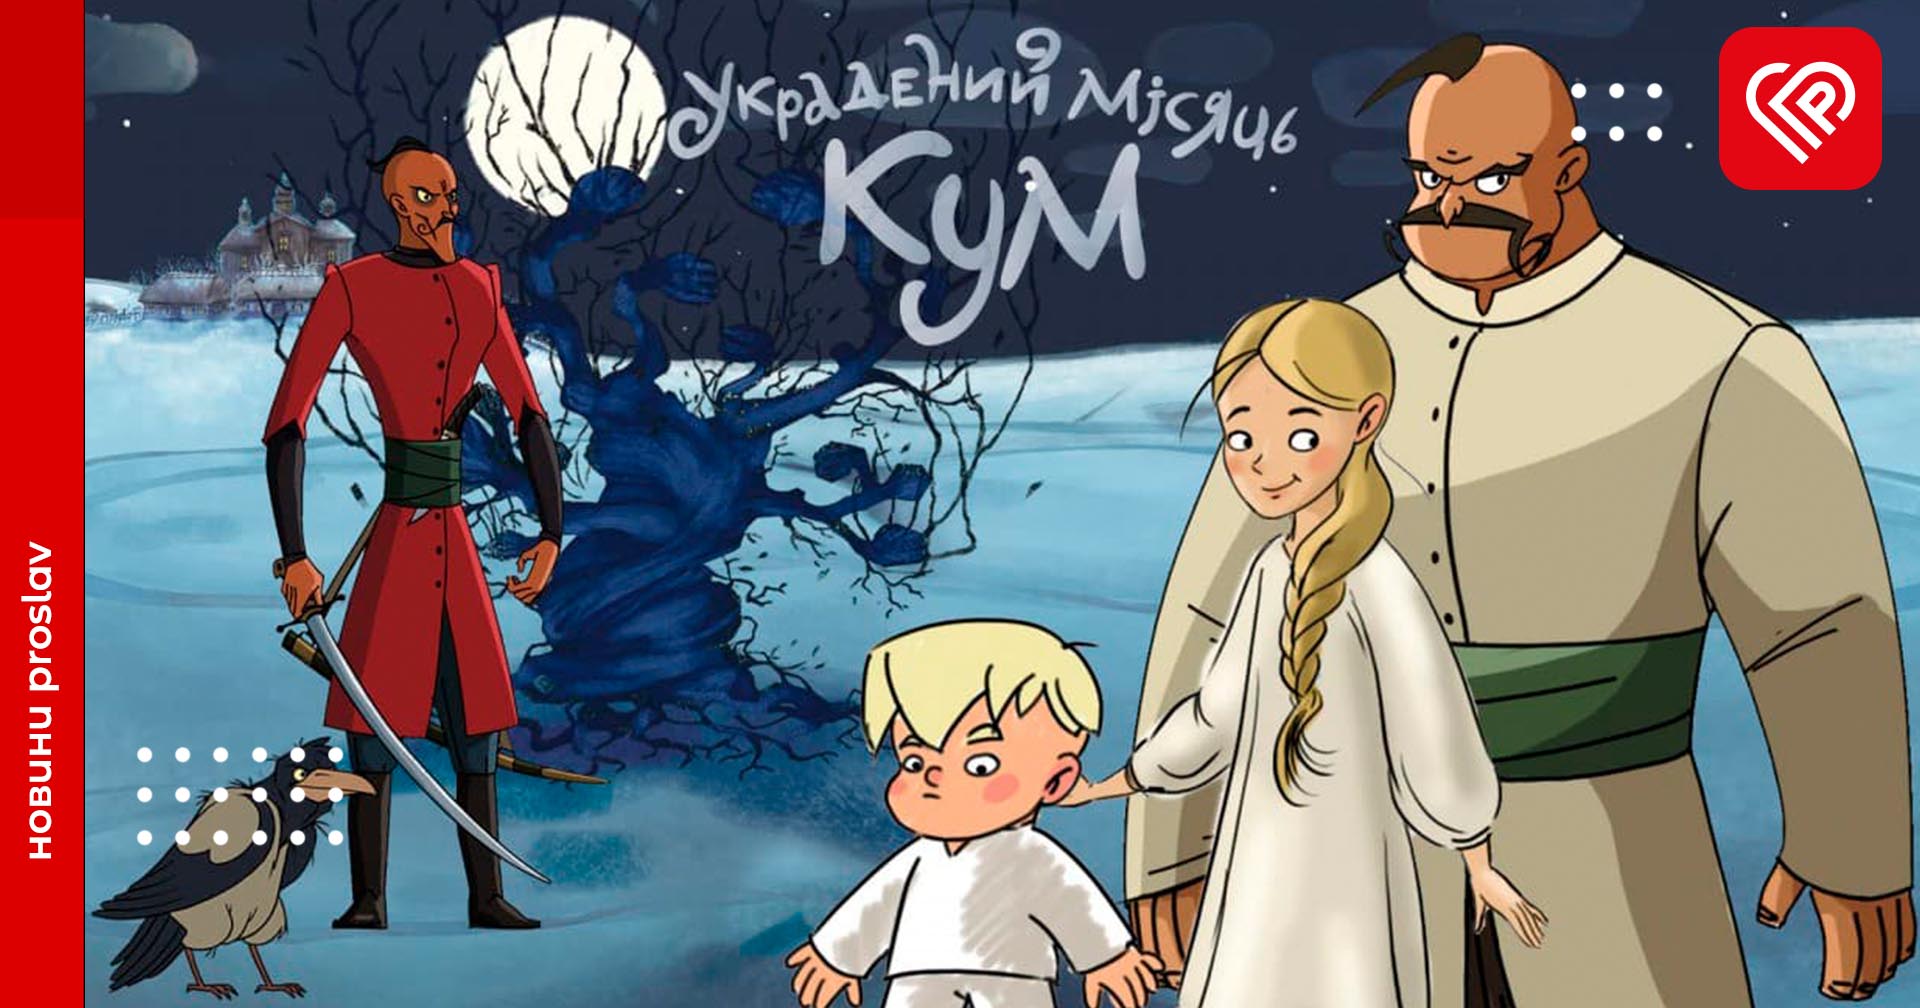 «Украдений місяць. Кум»: український фільм переміг на Фестивалі анімаційних студій в Парижі